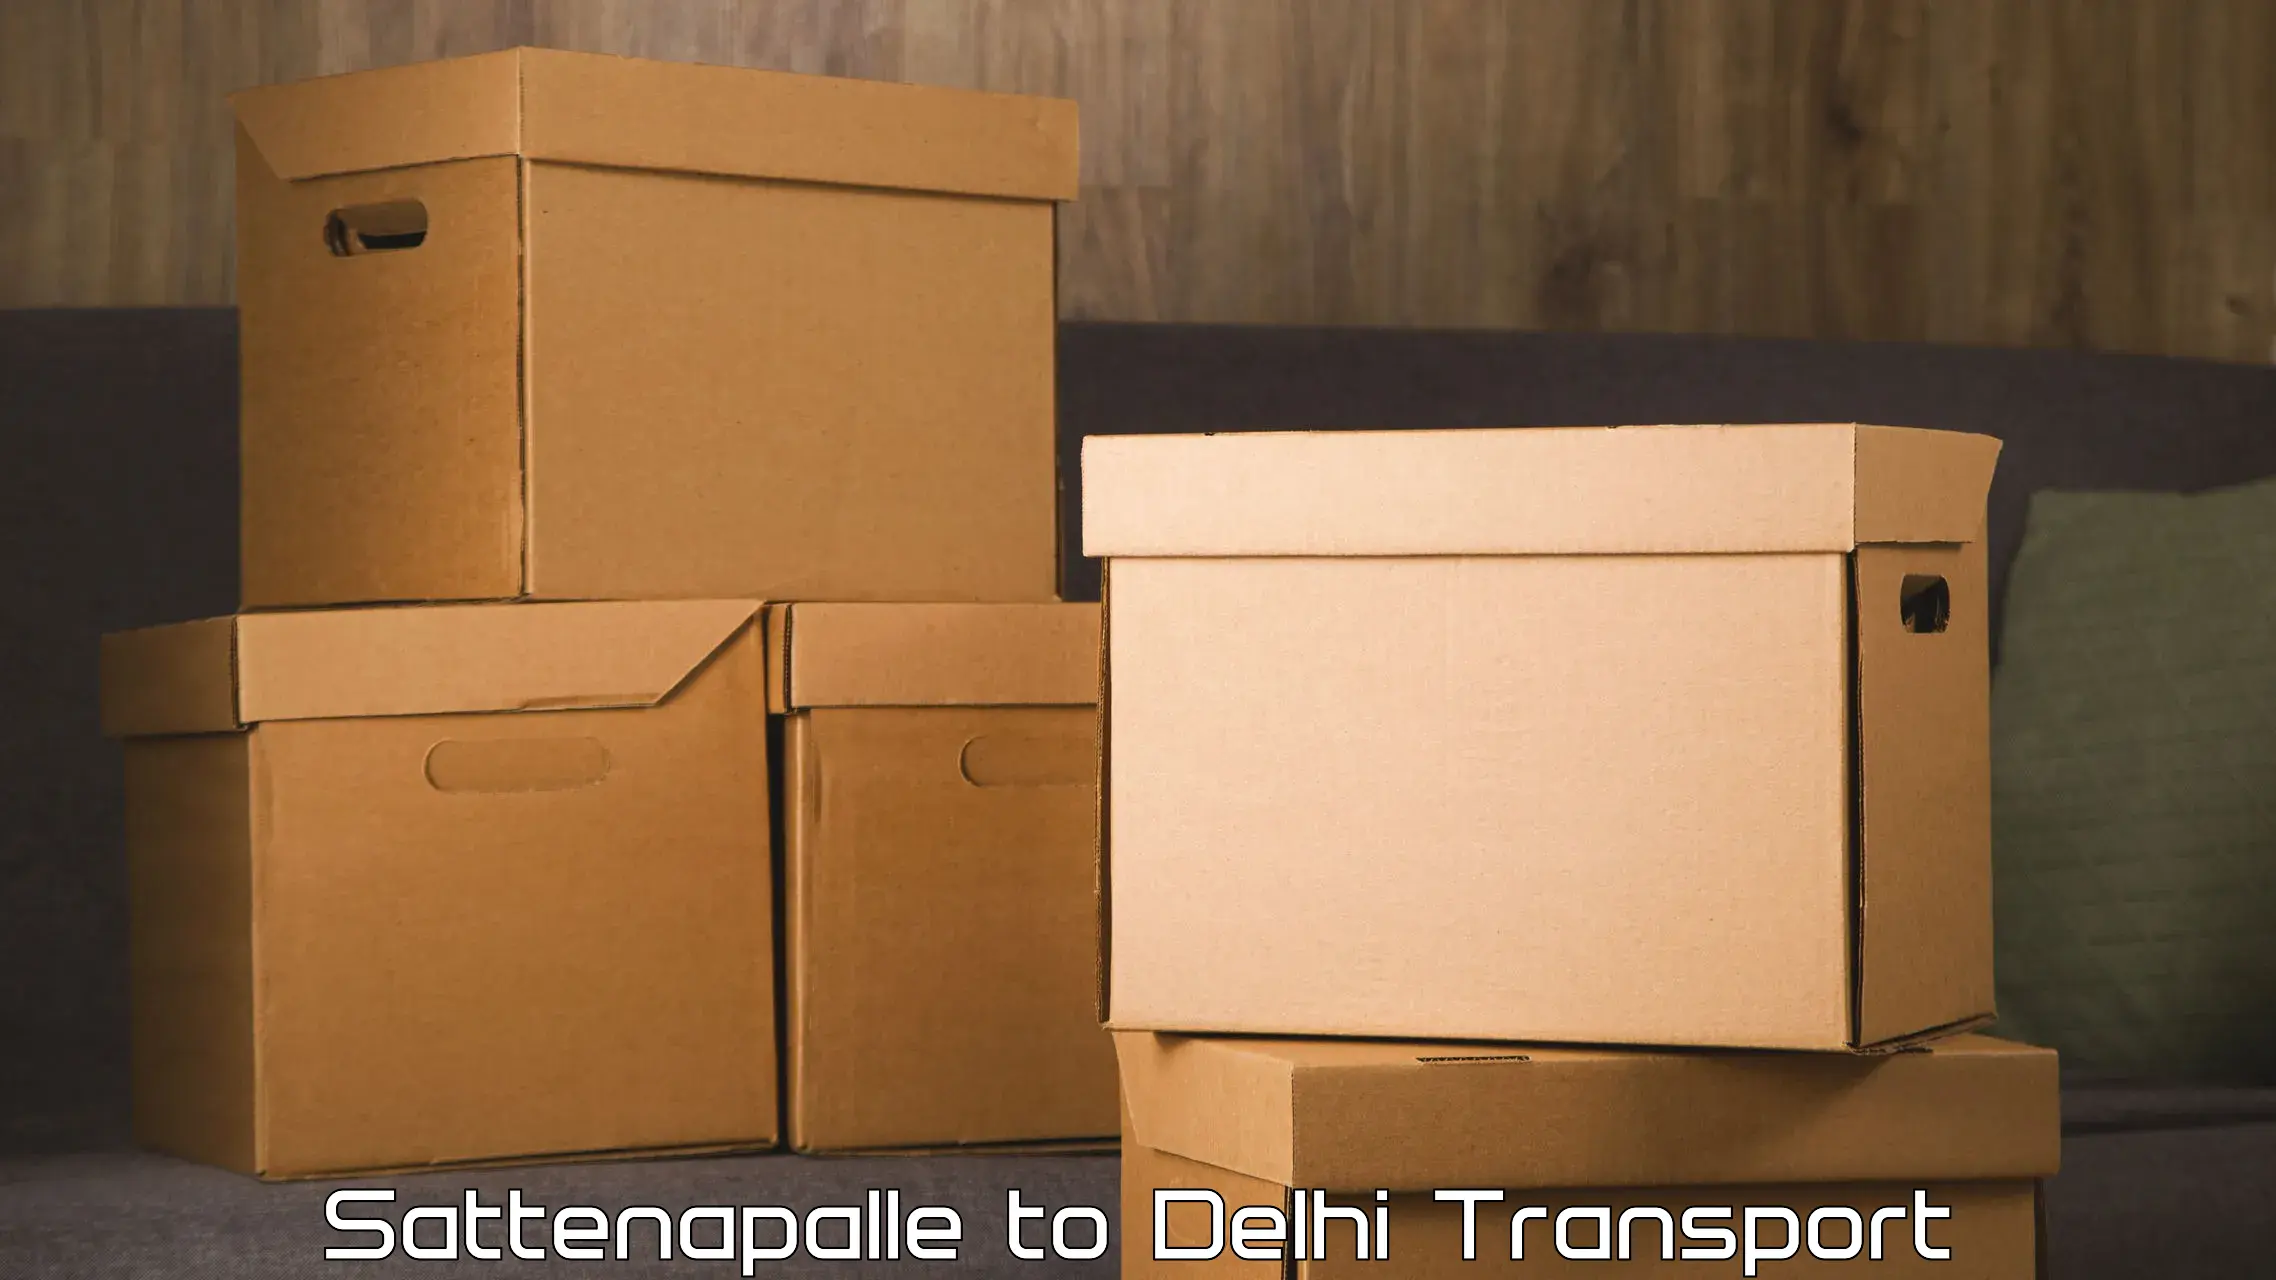 Two wheeler parcel service Sattenapalle to IIT Delhi